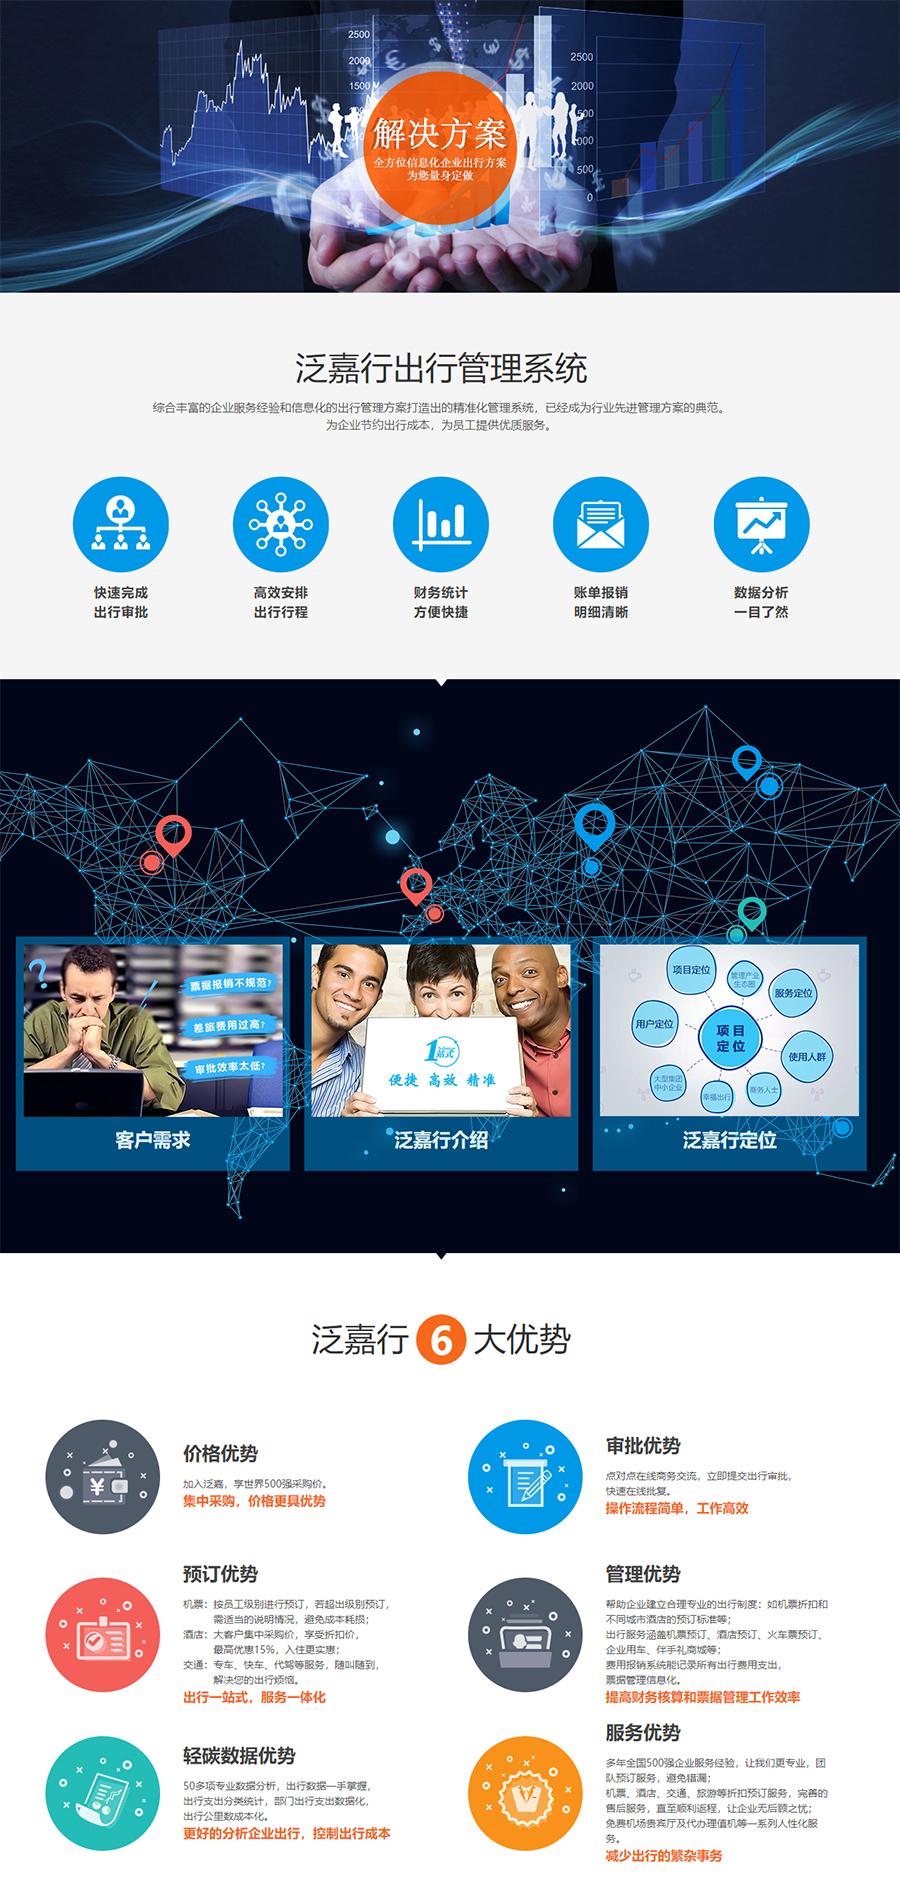 1嘉官网——企业服务大数据平台，赋能全球合作伙伴.jpg